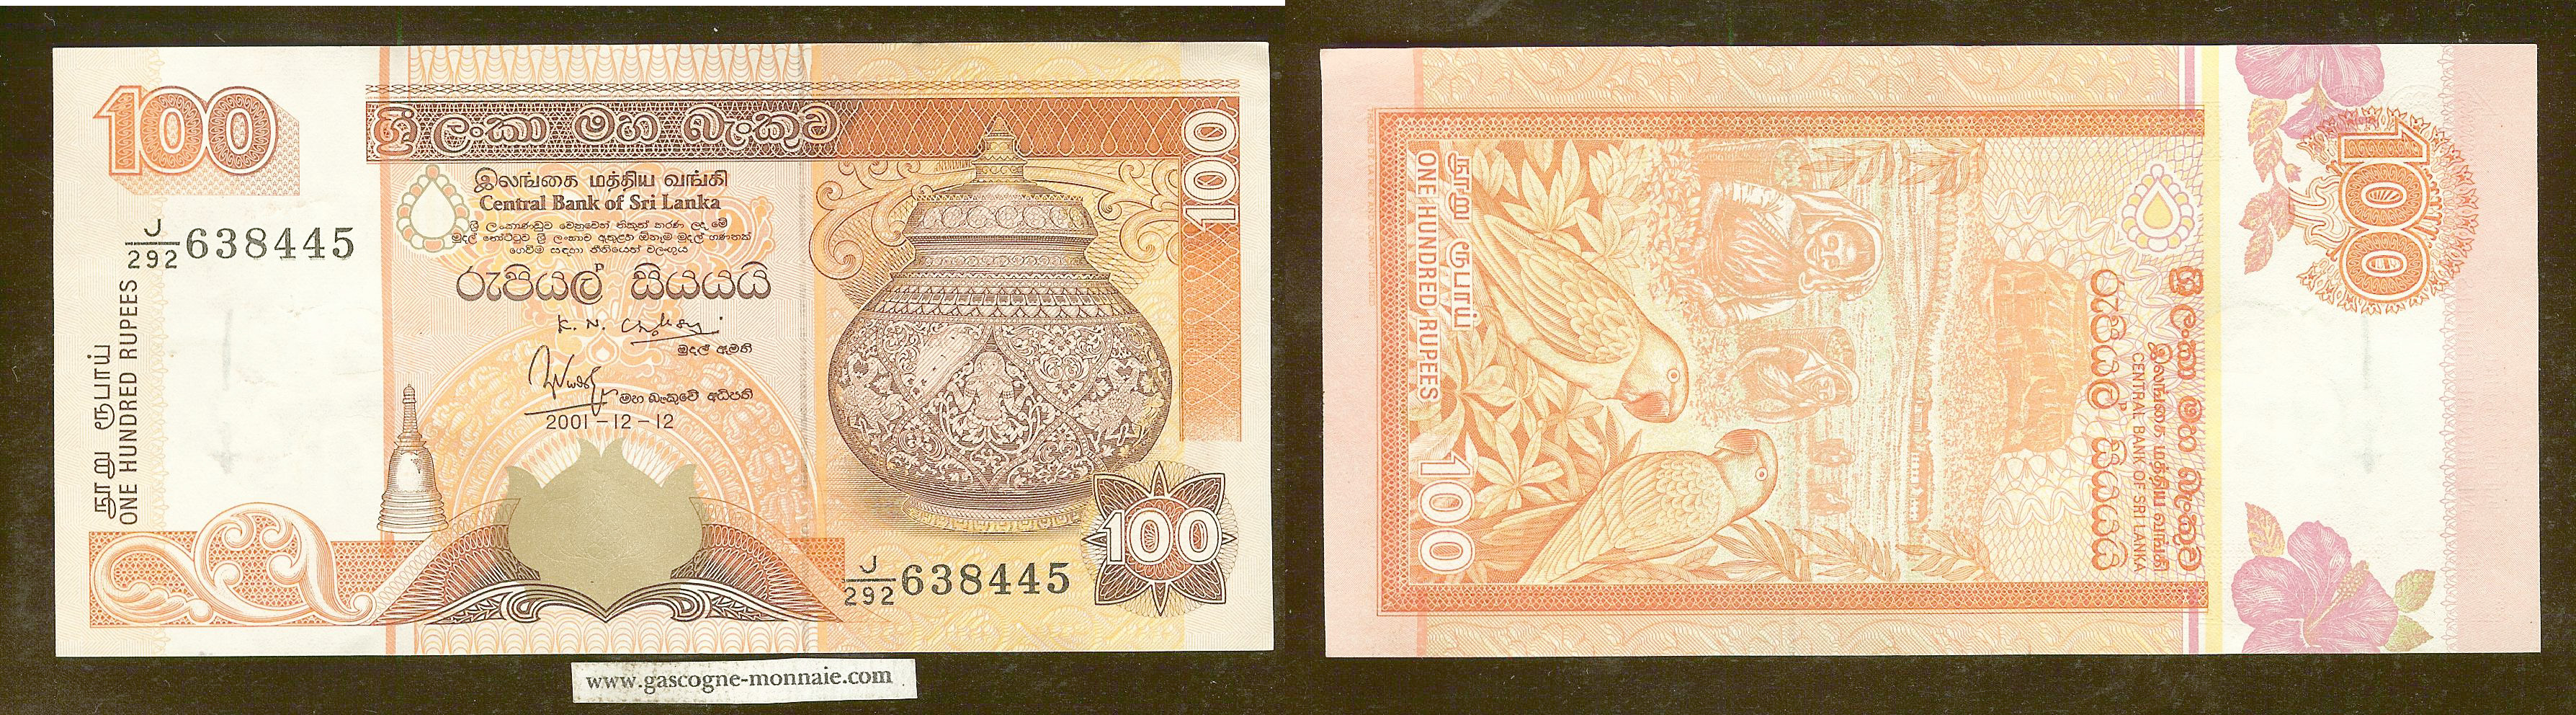 Sri Lanka 100 rupees 2001 AU